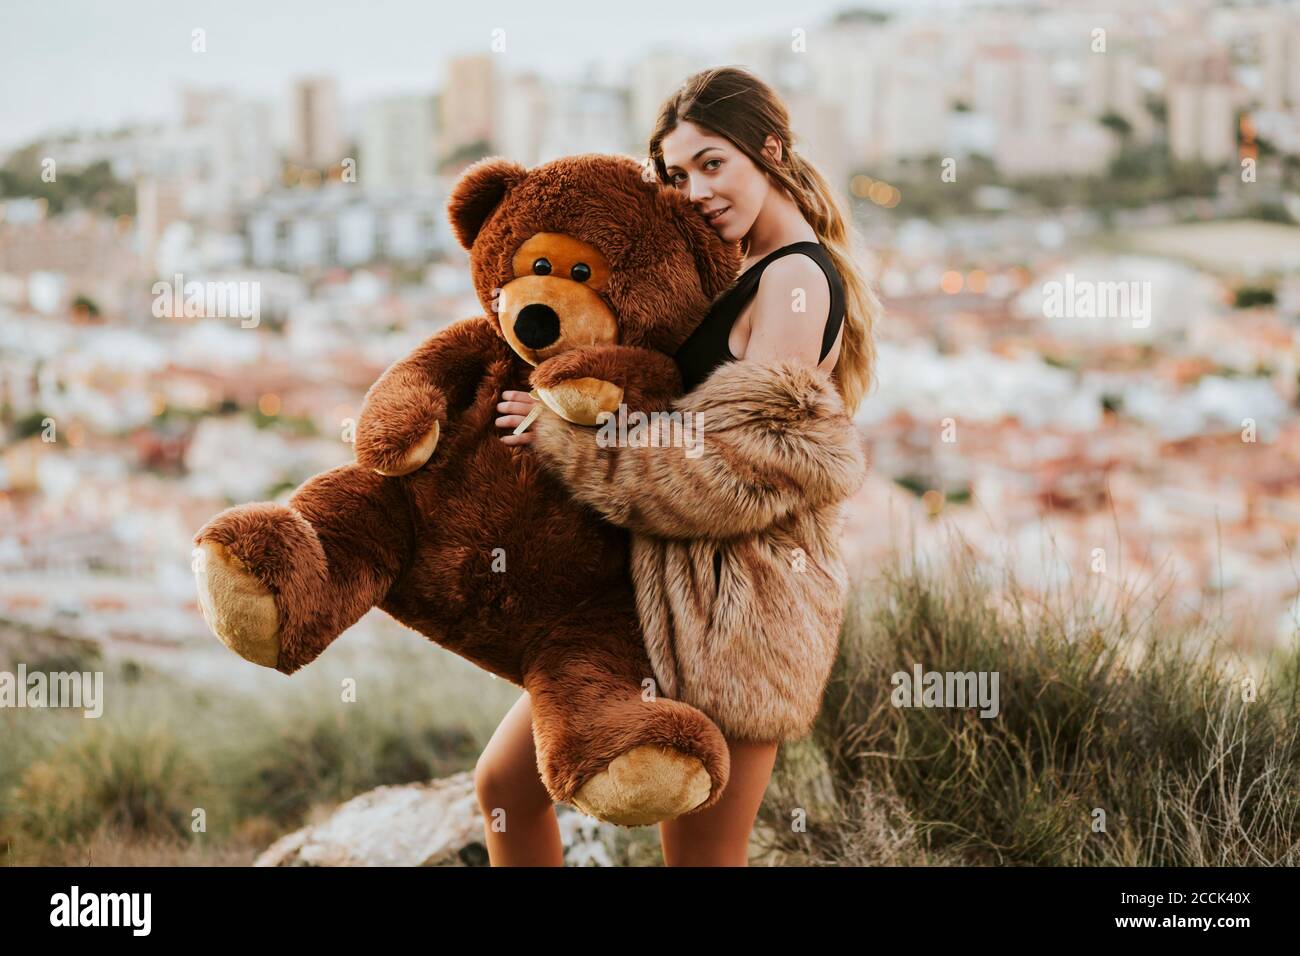 Jeune femme embrassant l'ours en peluche alors que la ville est en arrière-plan Banque D'Images